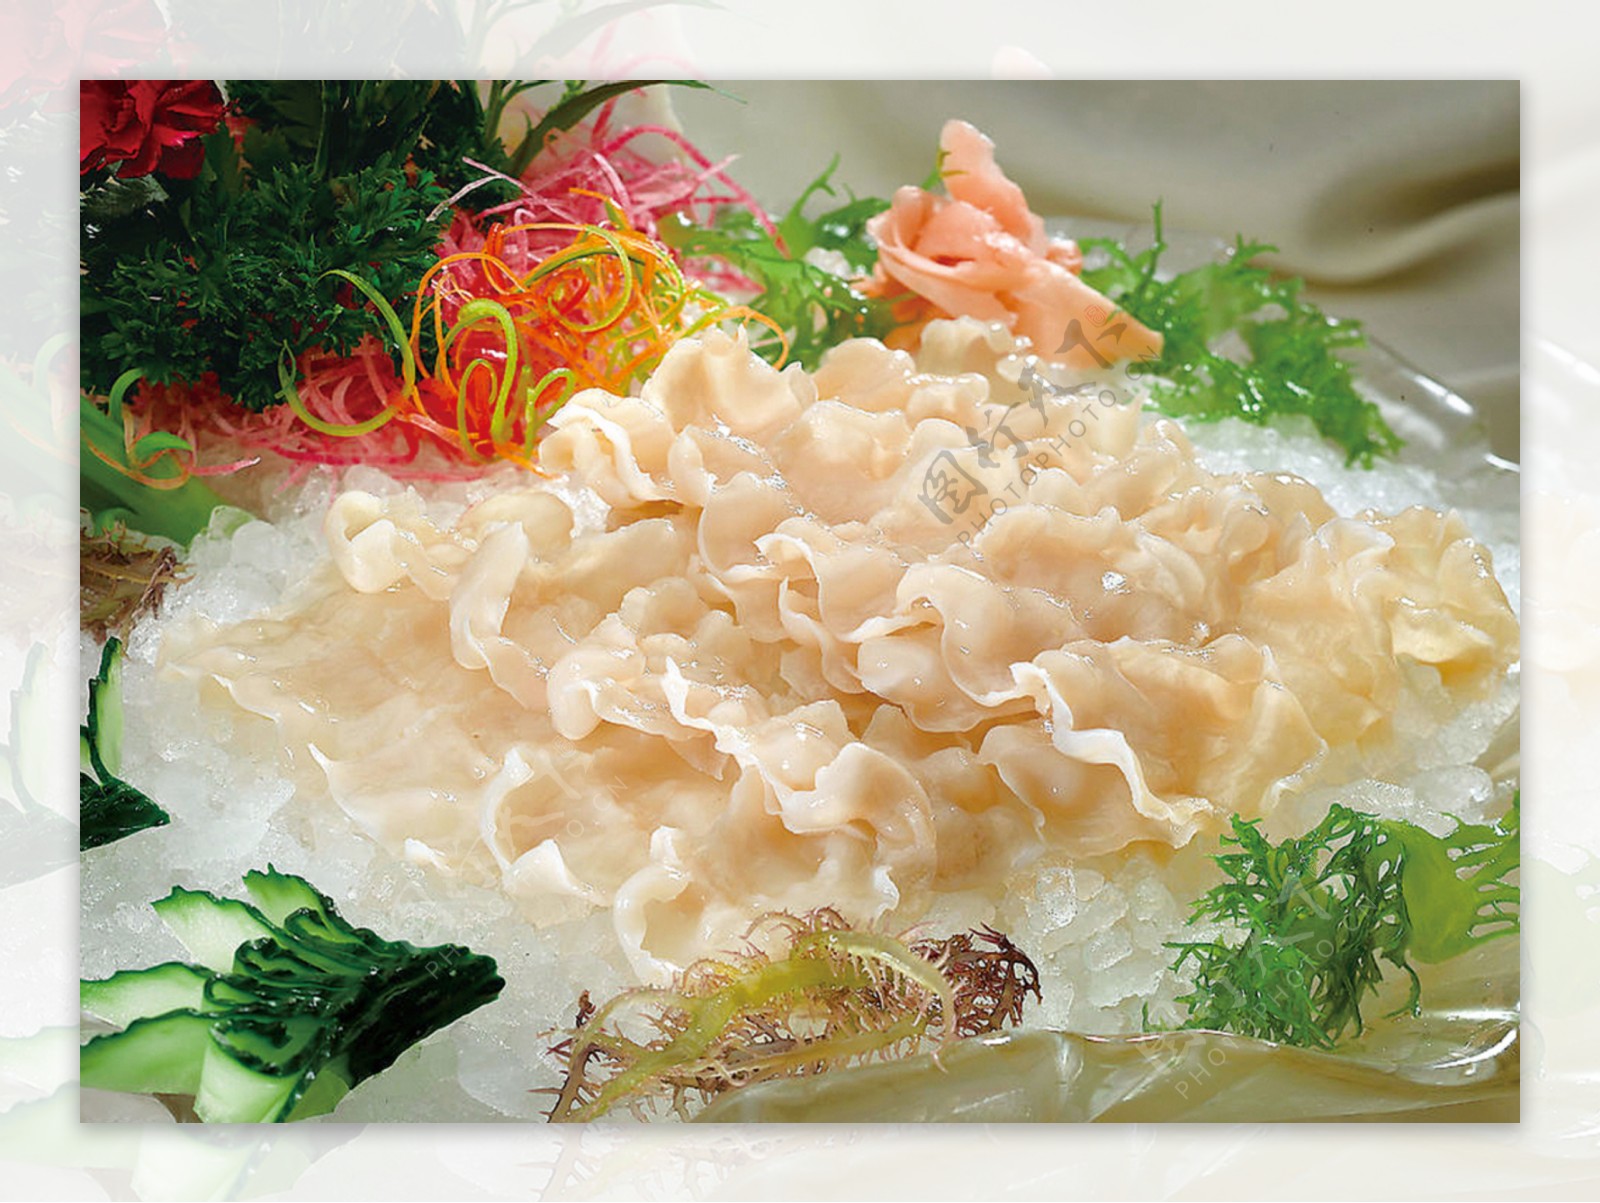 豉椒炒象拔蚌食譜、做法 | YeungMa的Cook1Cook食譜分享